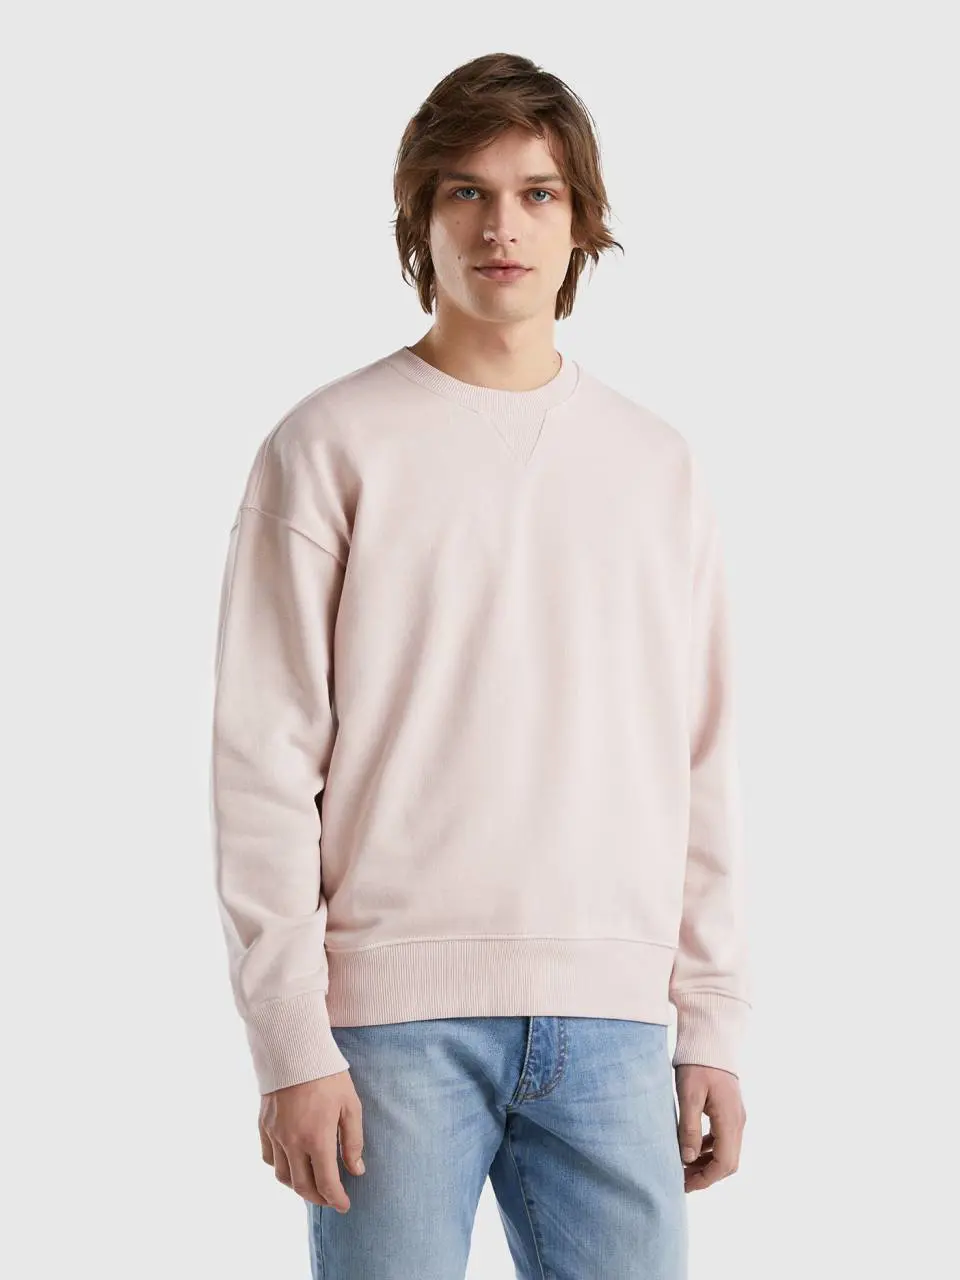 Benetton 100% cotton pullover sweatshirt. 1